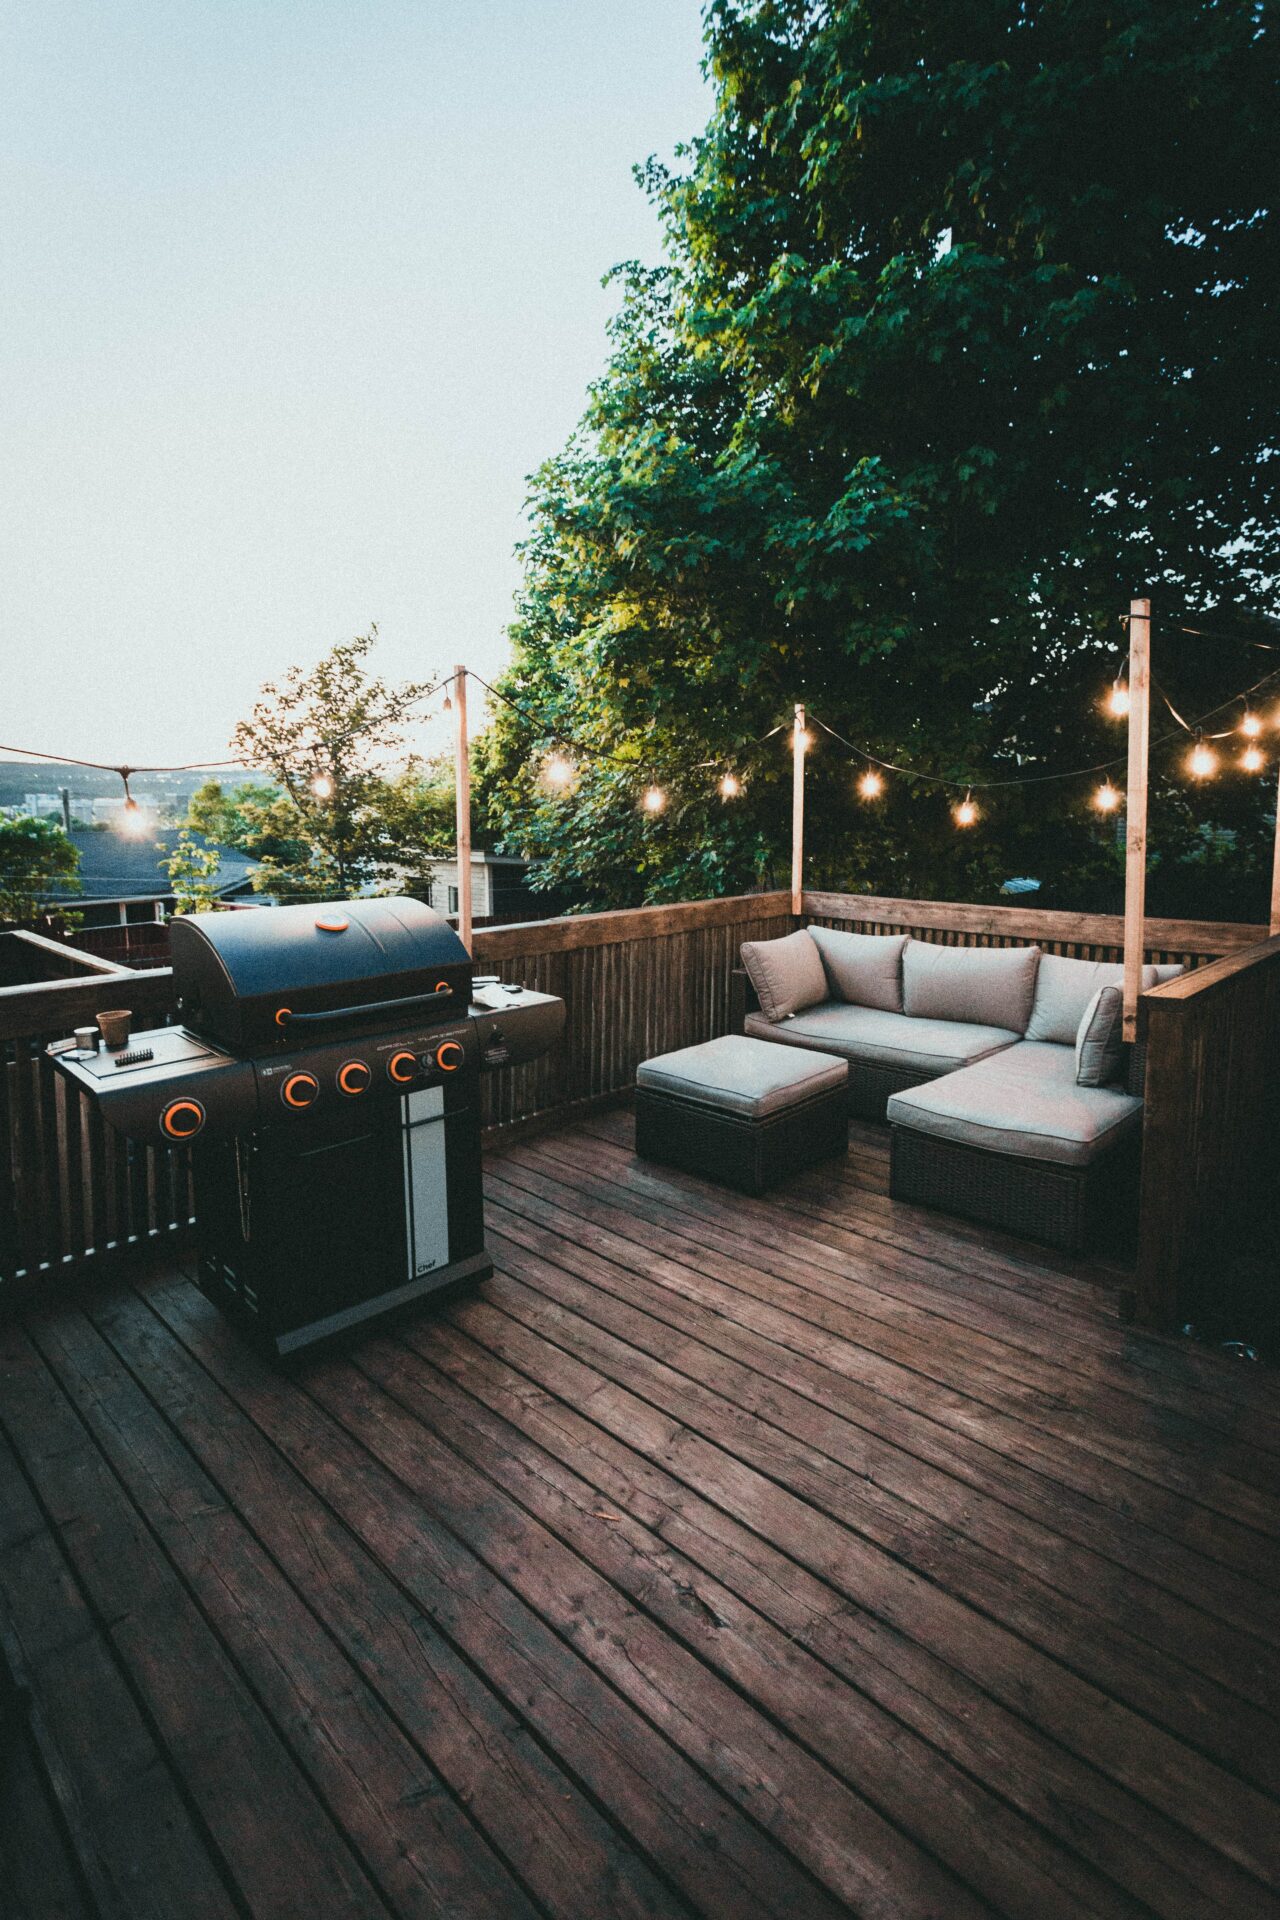 træterrasse med en grill og havesofa